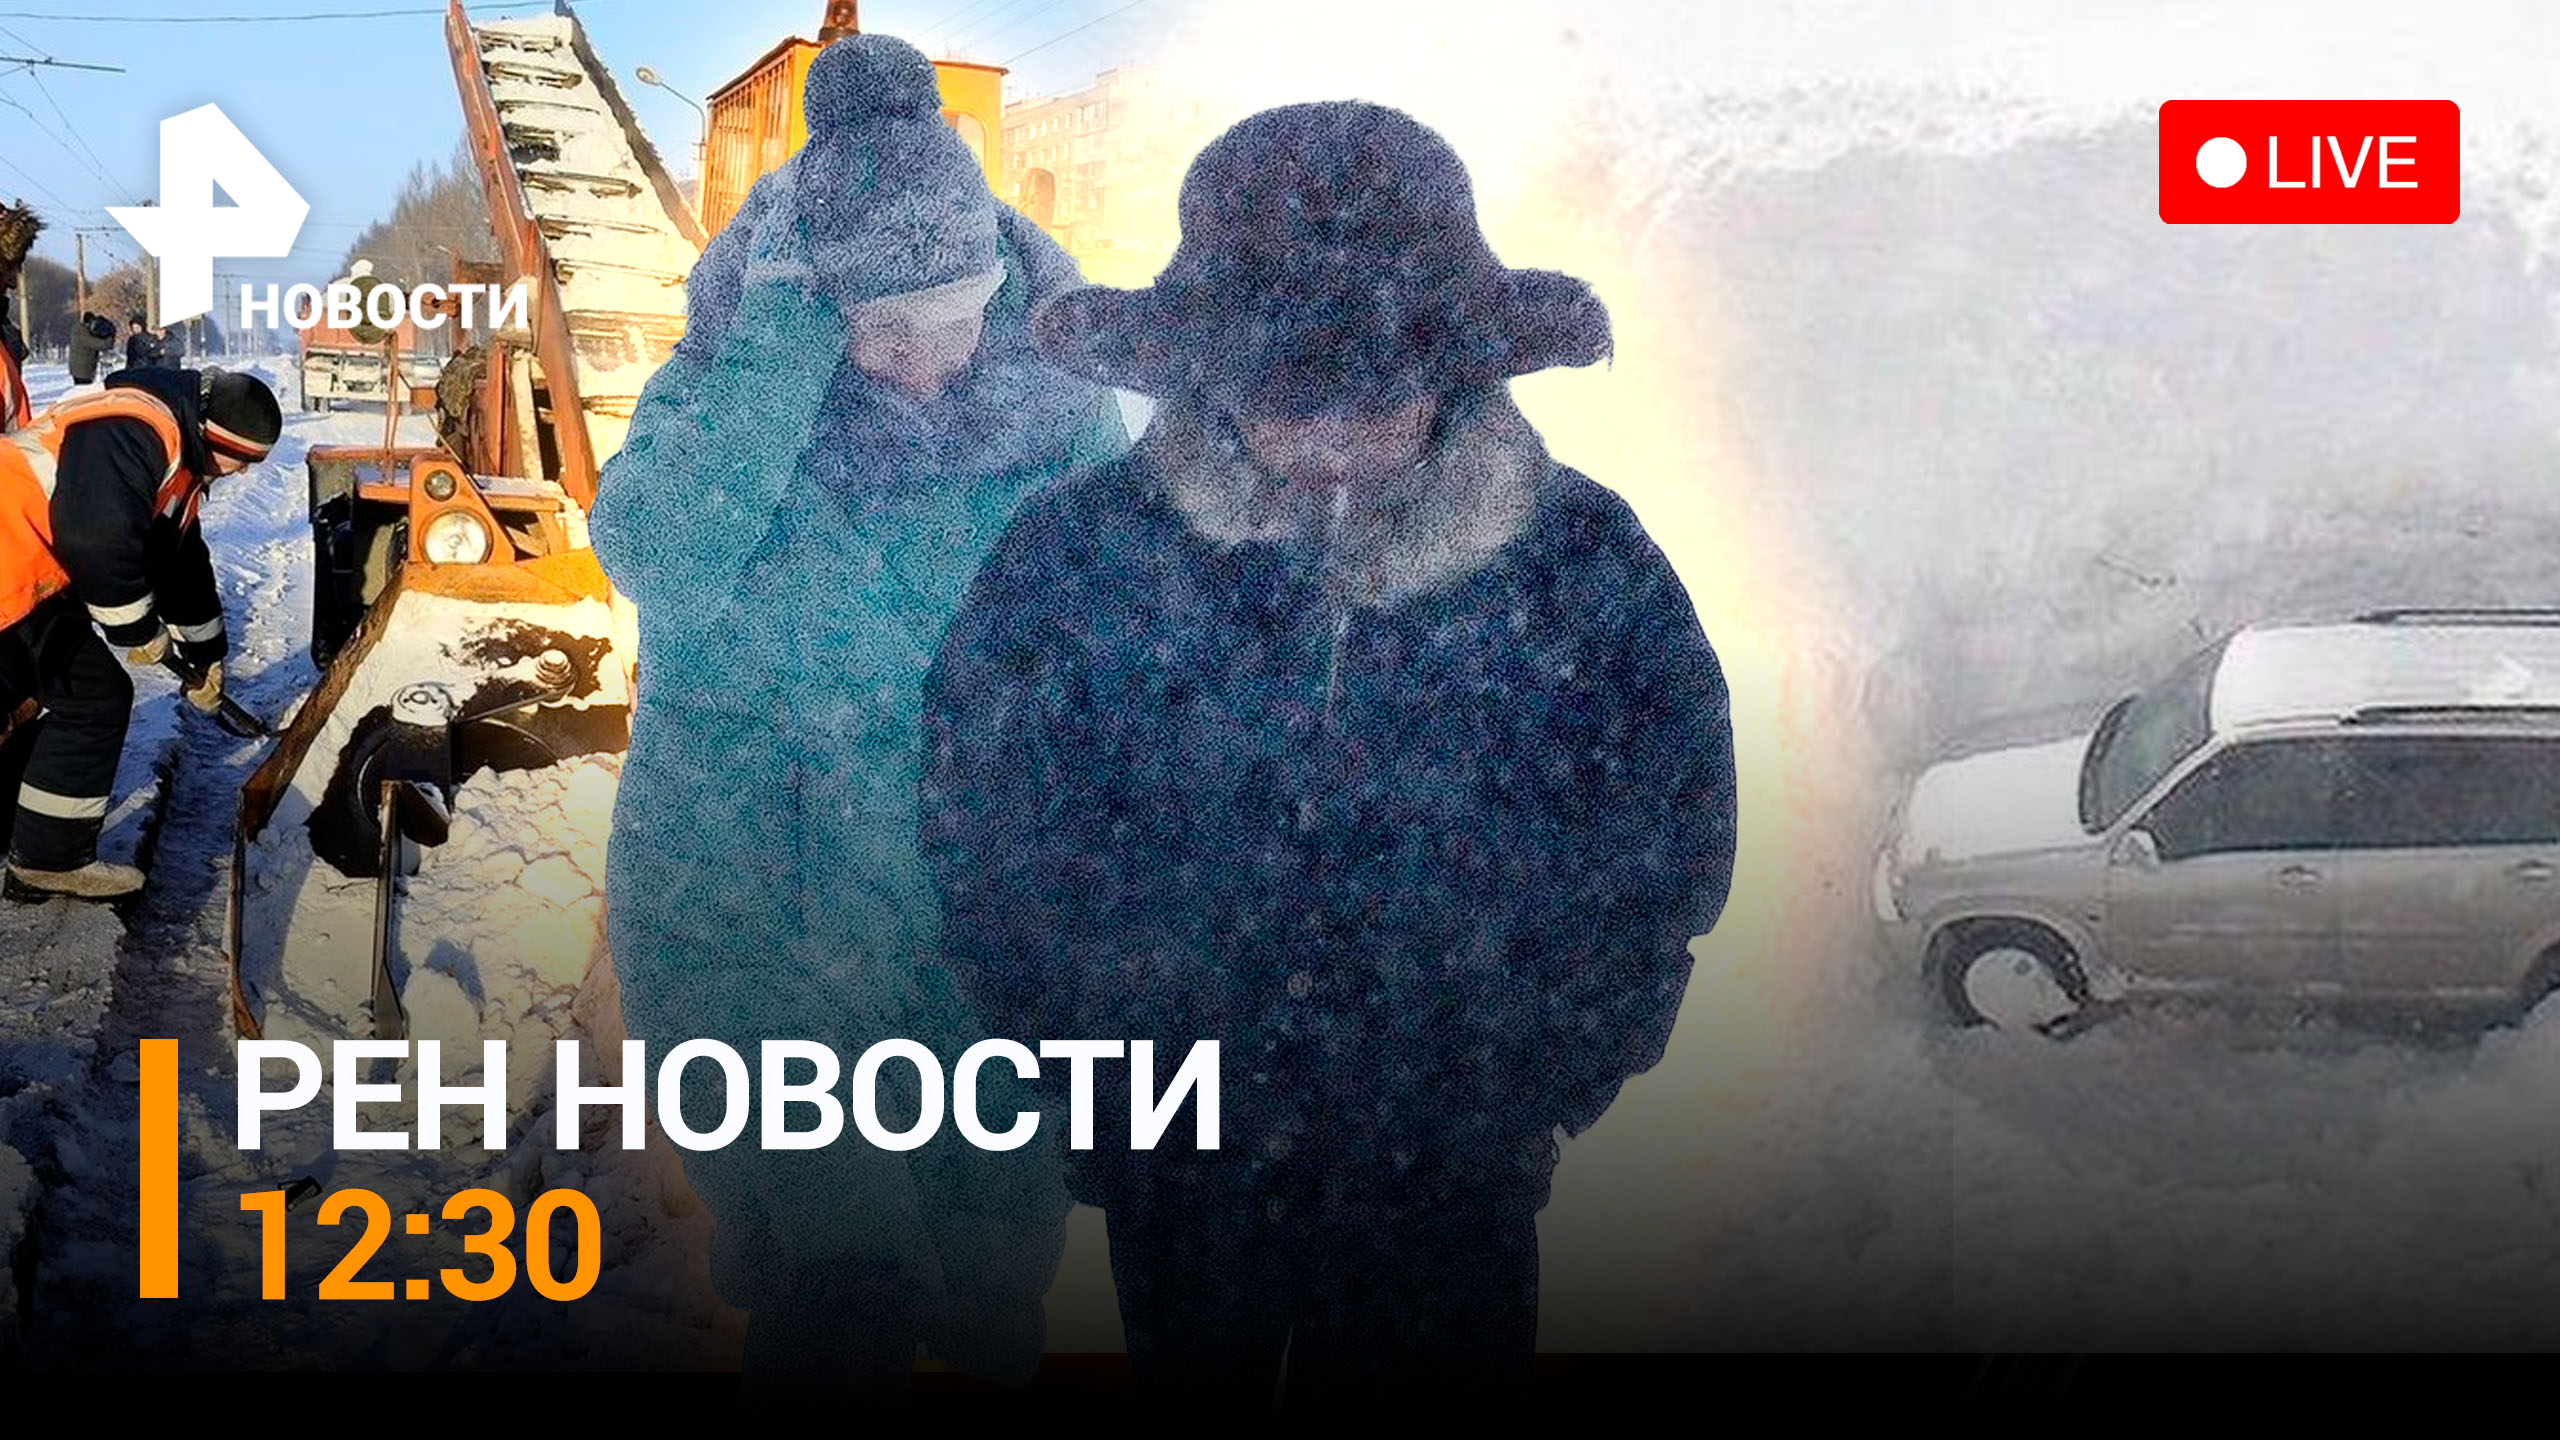 Снежный армагеддон в Москве. Туристы из Египта возвращаются / РЕН ТВ НОВОСТИ 12:30 от 18.12